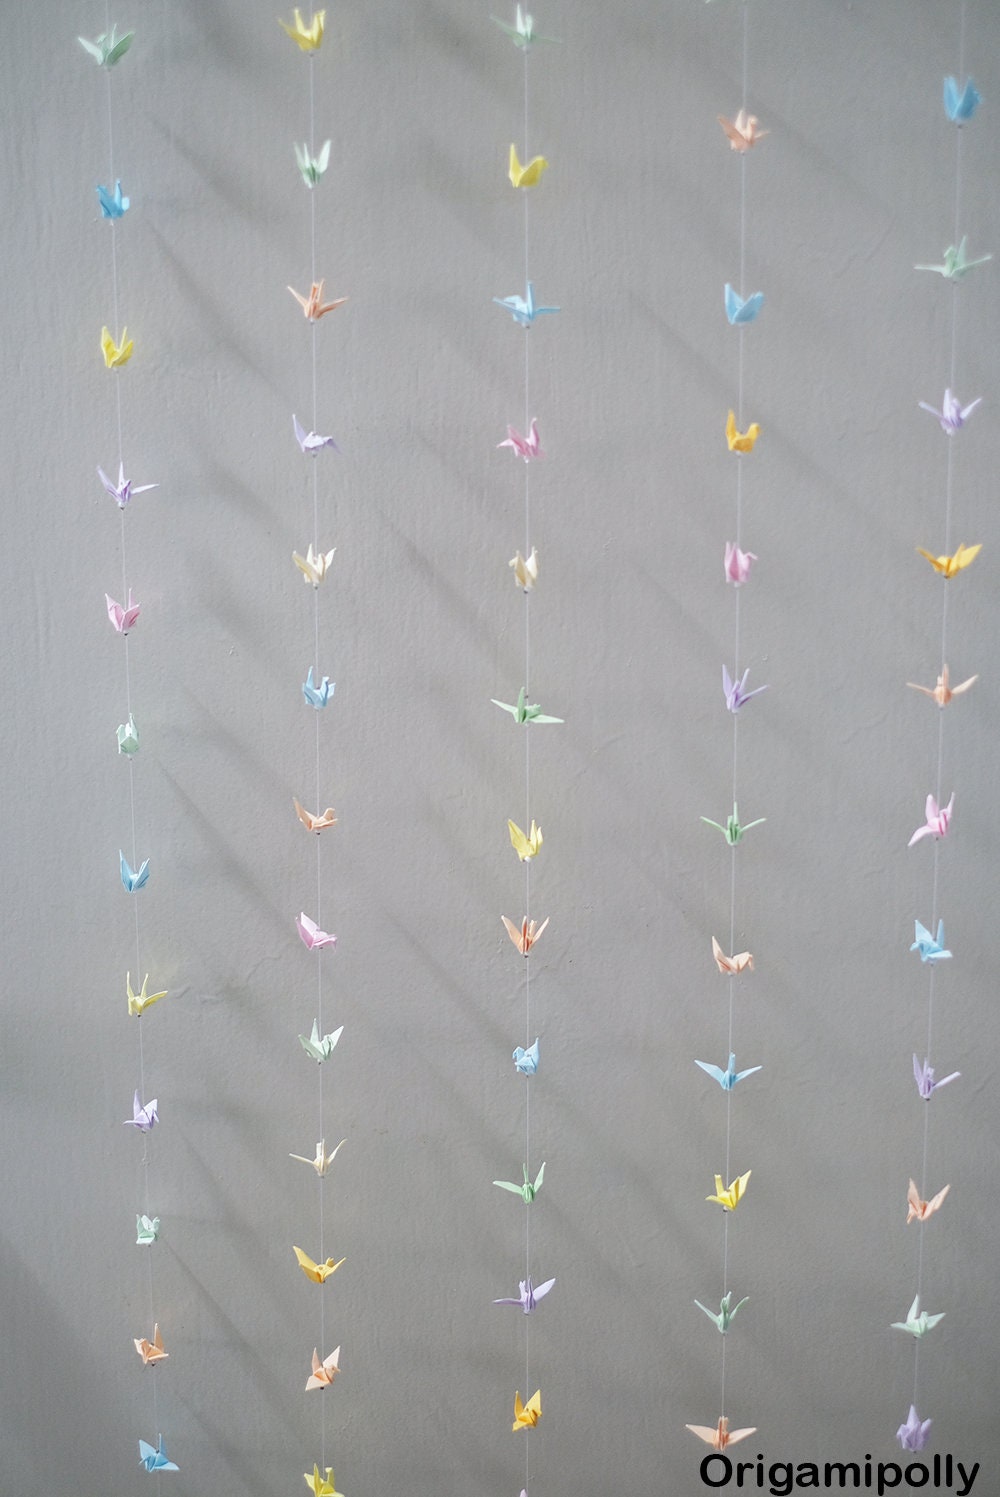 40 Cuerdas 1000 Grúa Origami Grúa Guirnalda Mezcla de colores Pequeña grulla de papel de Origami de 1,5 pulgadas en cuerda para decoración de bodas Telón de fondo